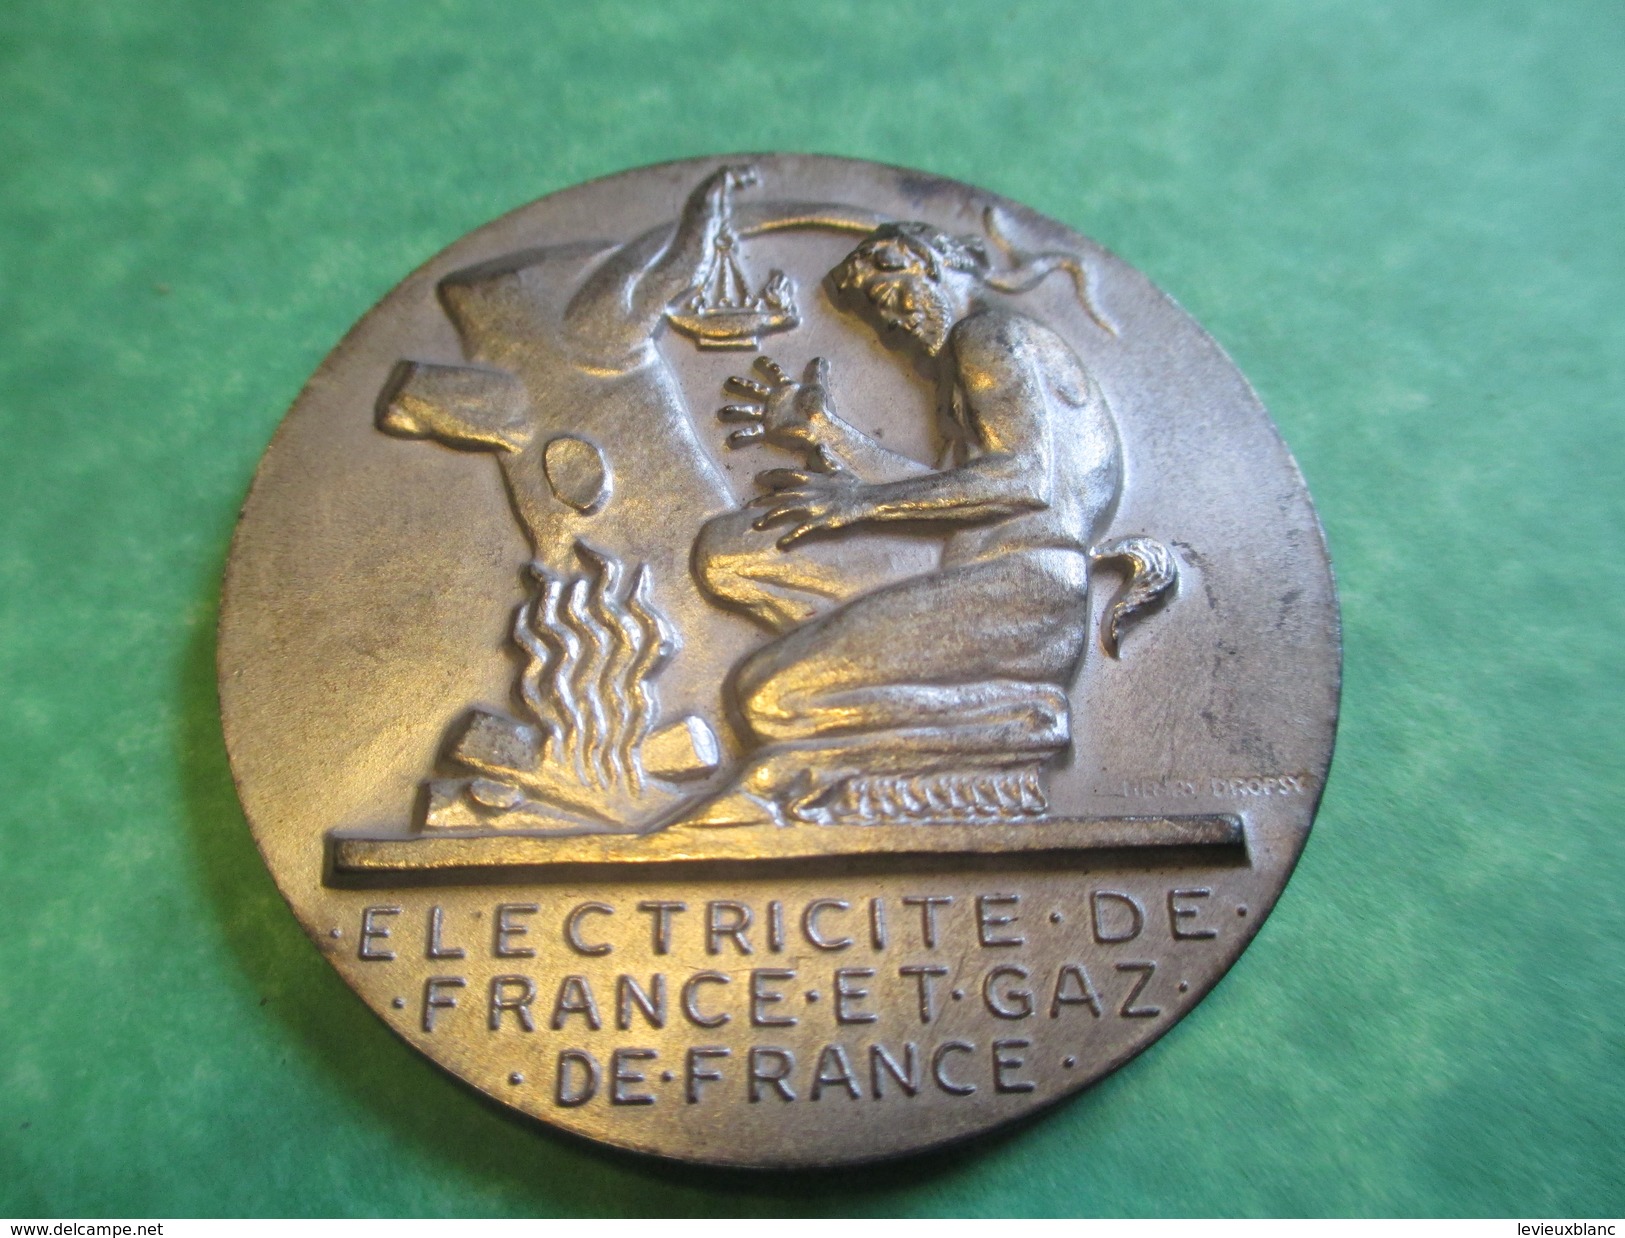 Médaille D'Ancienneté/ Entreprise/ Electricité De France Et Gaz De France/25 Années De Service/CARON/Modéle1961   MED103 - Professionnels / De Société